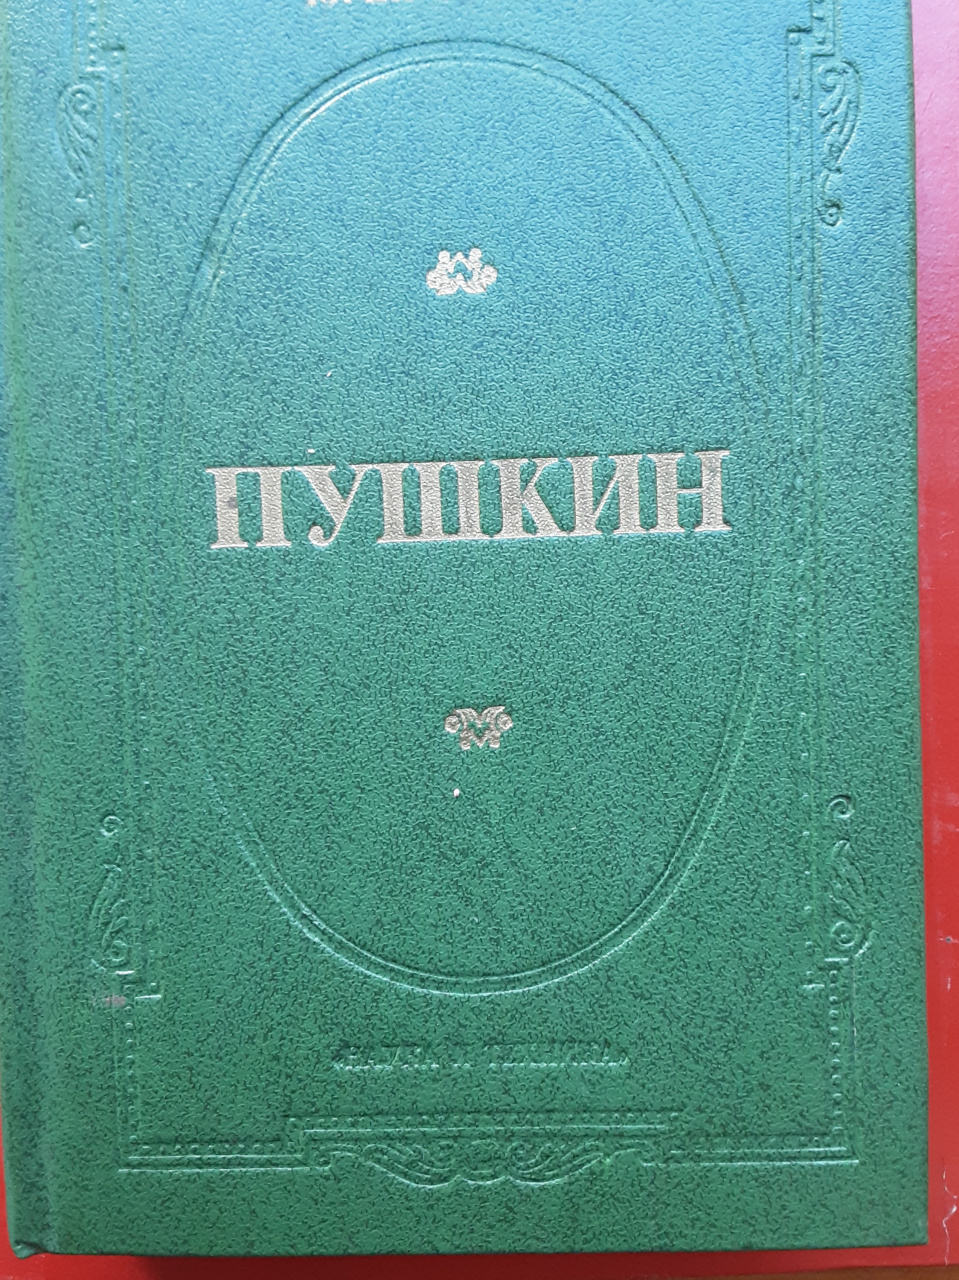 Ю. Тынянов. Пушкин (роман)